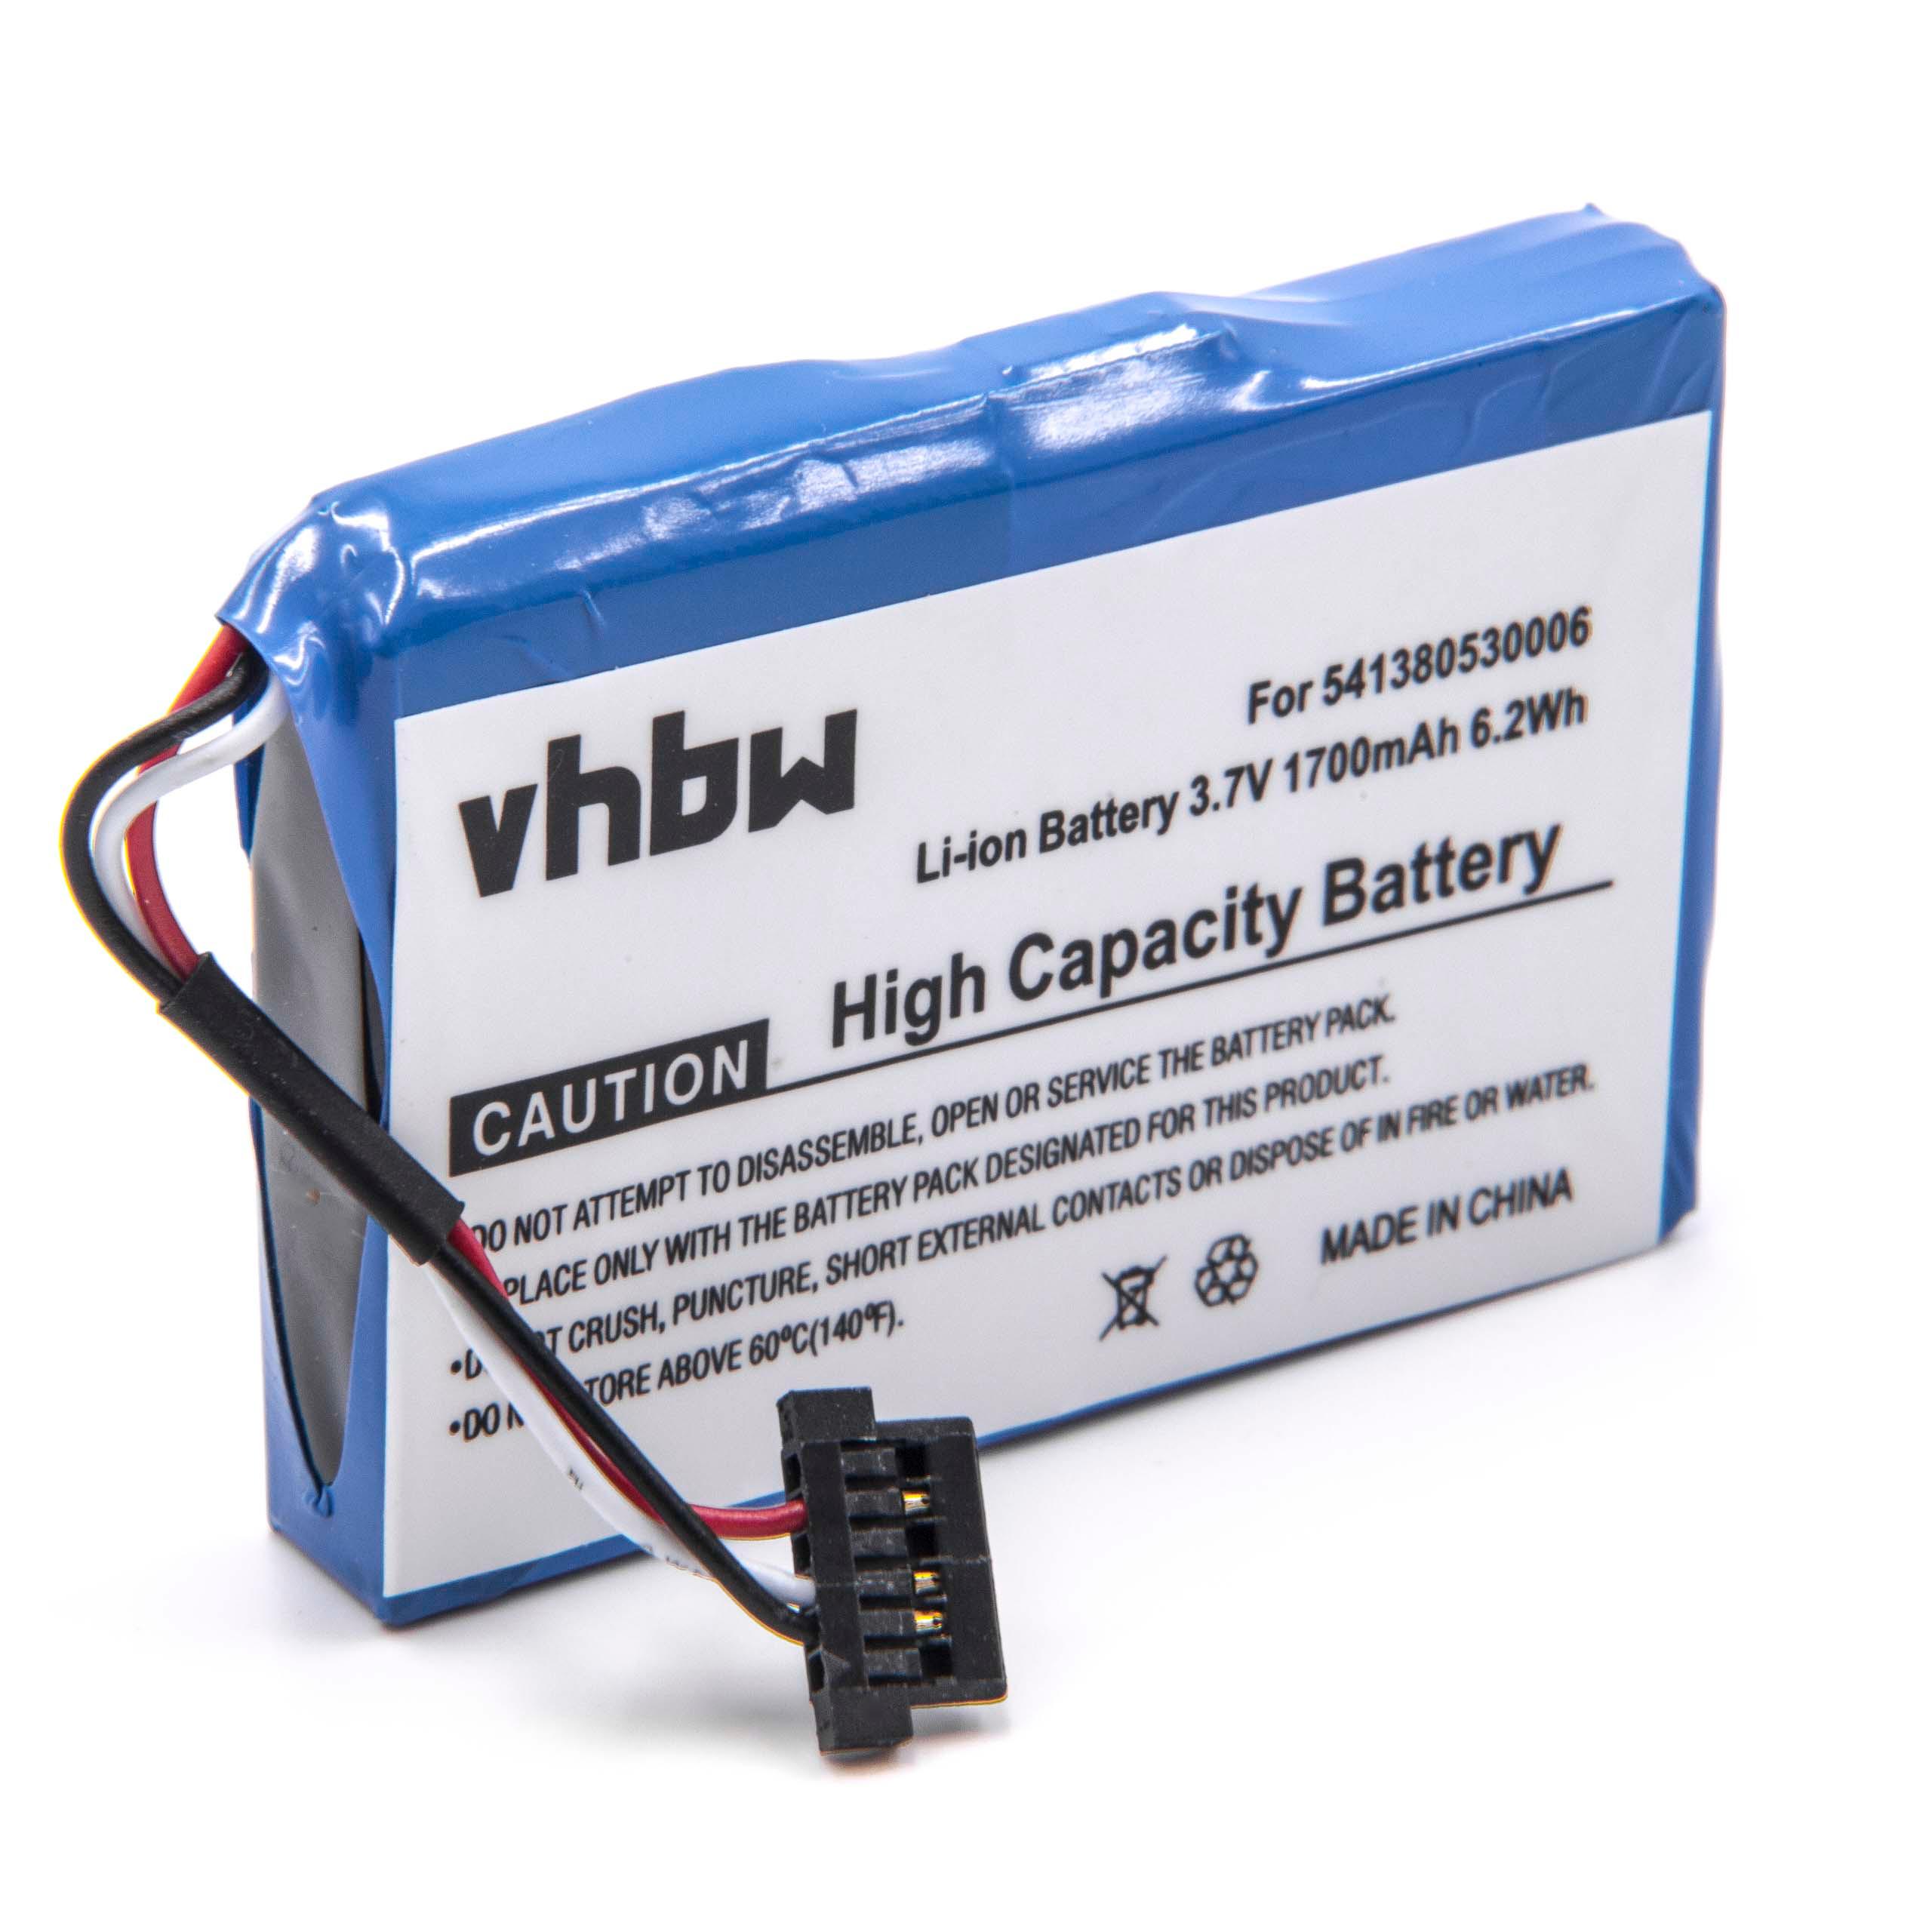 Batterie remplace BPLP720/11-A1 B, SJM120, 541380530006 pour navigation GPS - 1700mAh 3,7V Li-ion